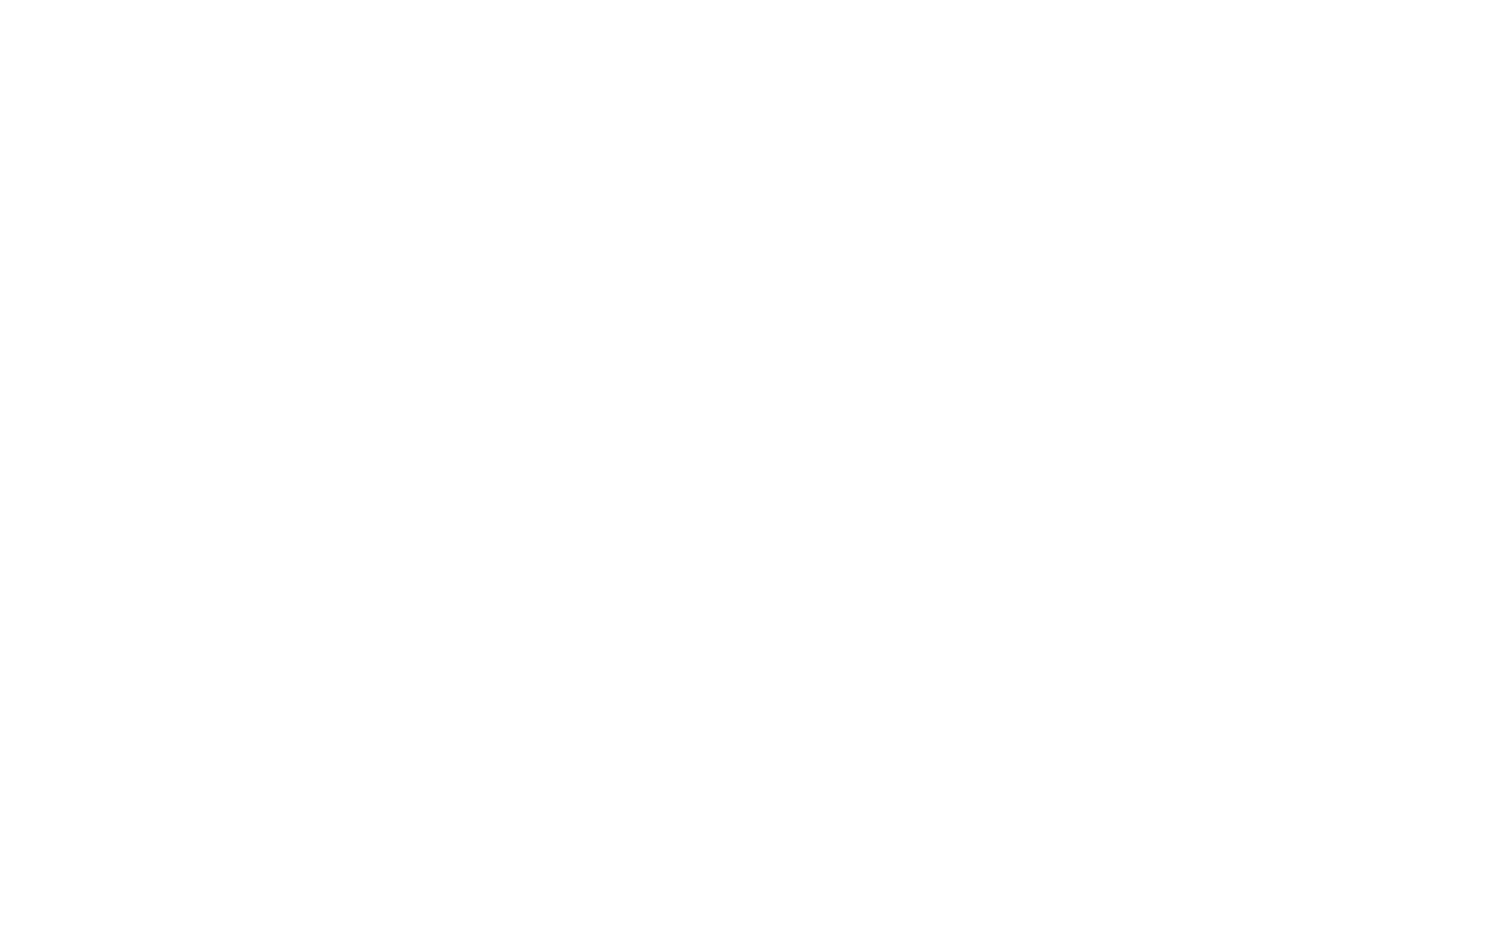 John Gorman